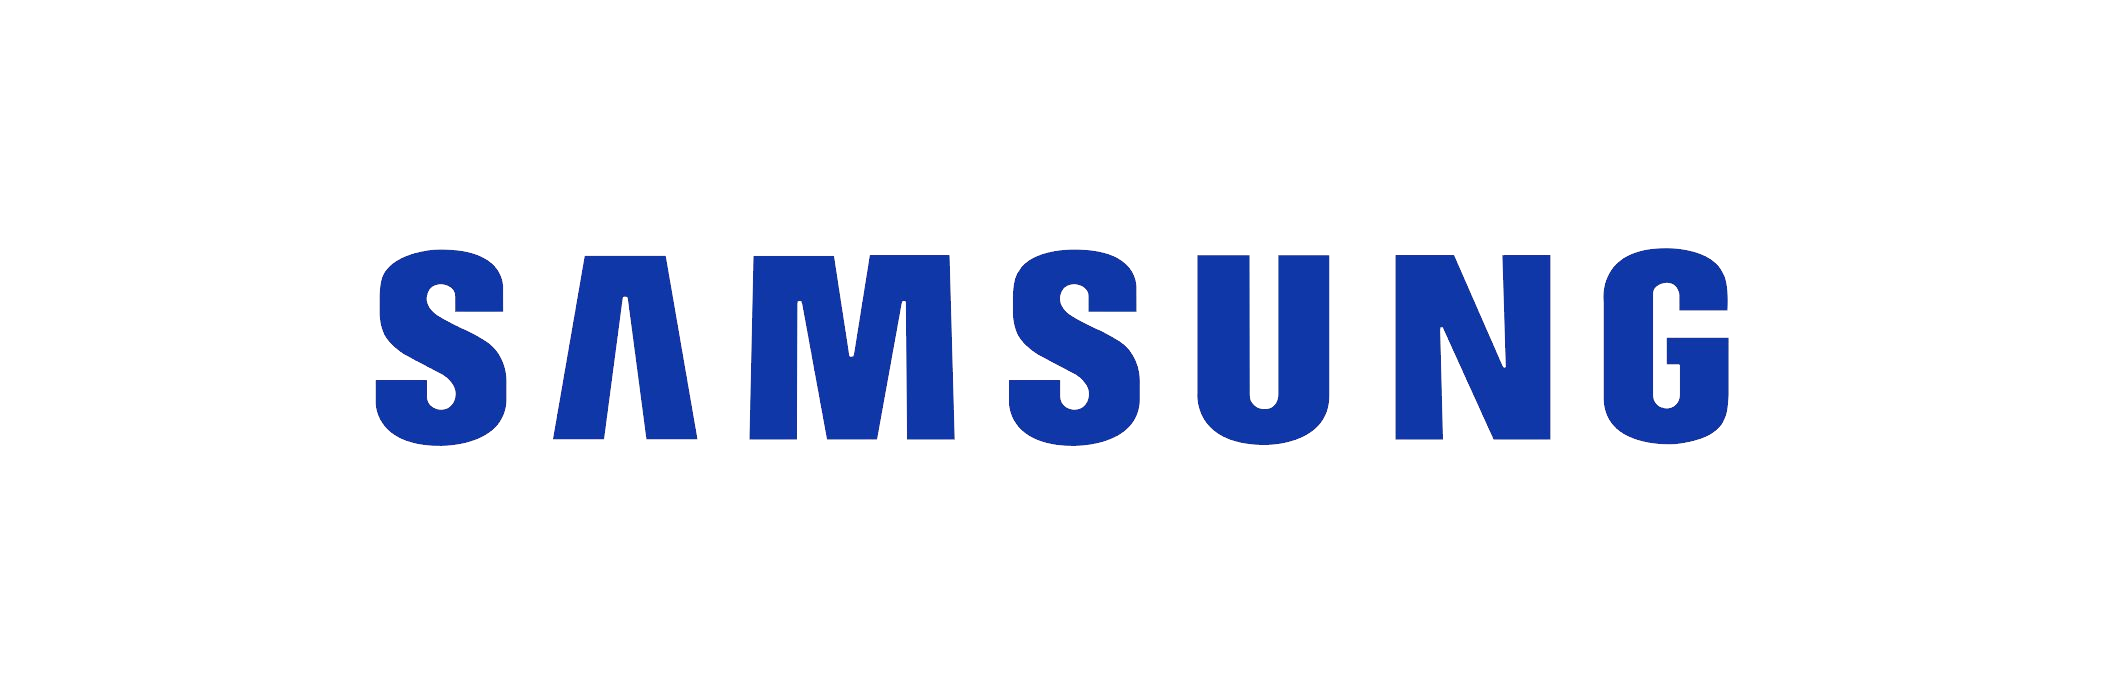 Samsung logo PNG images